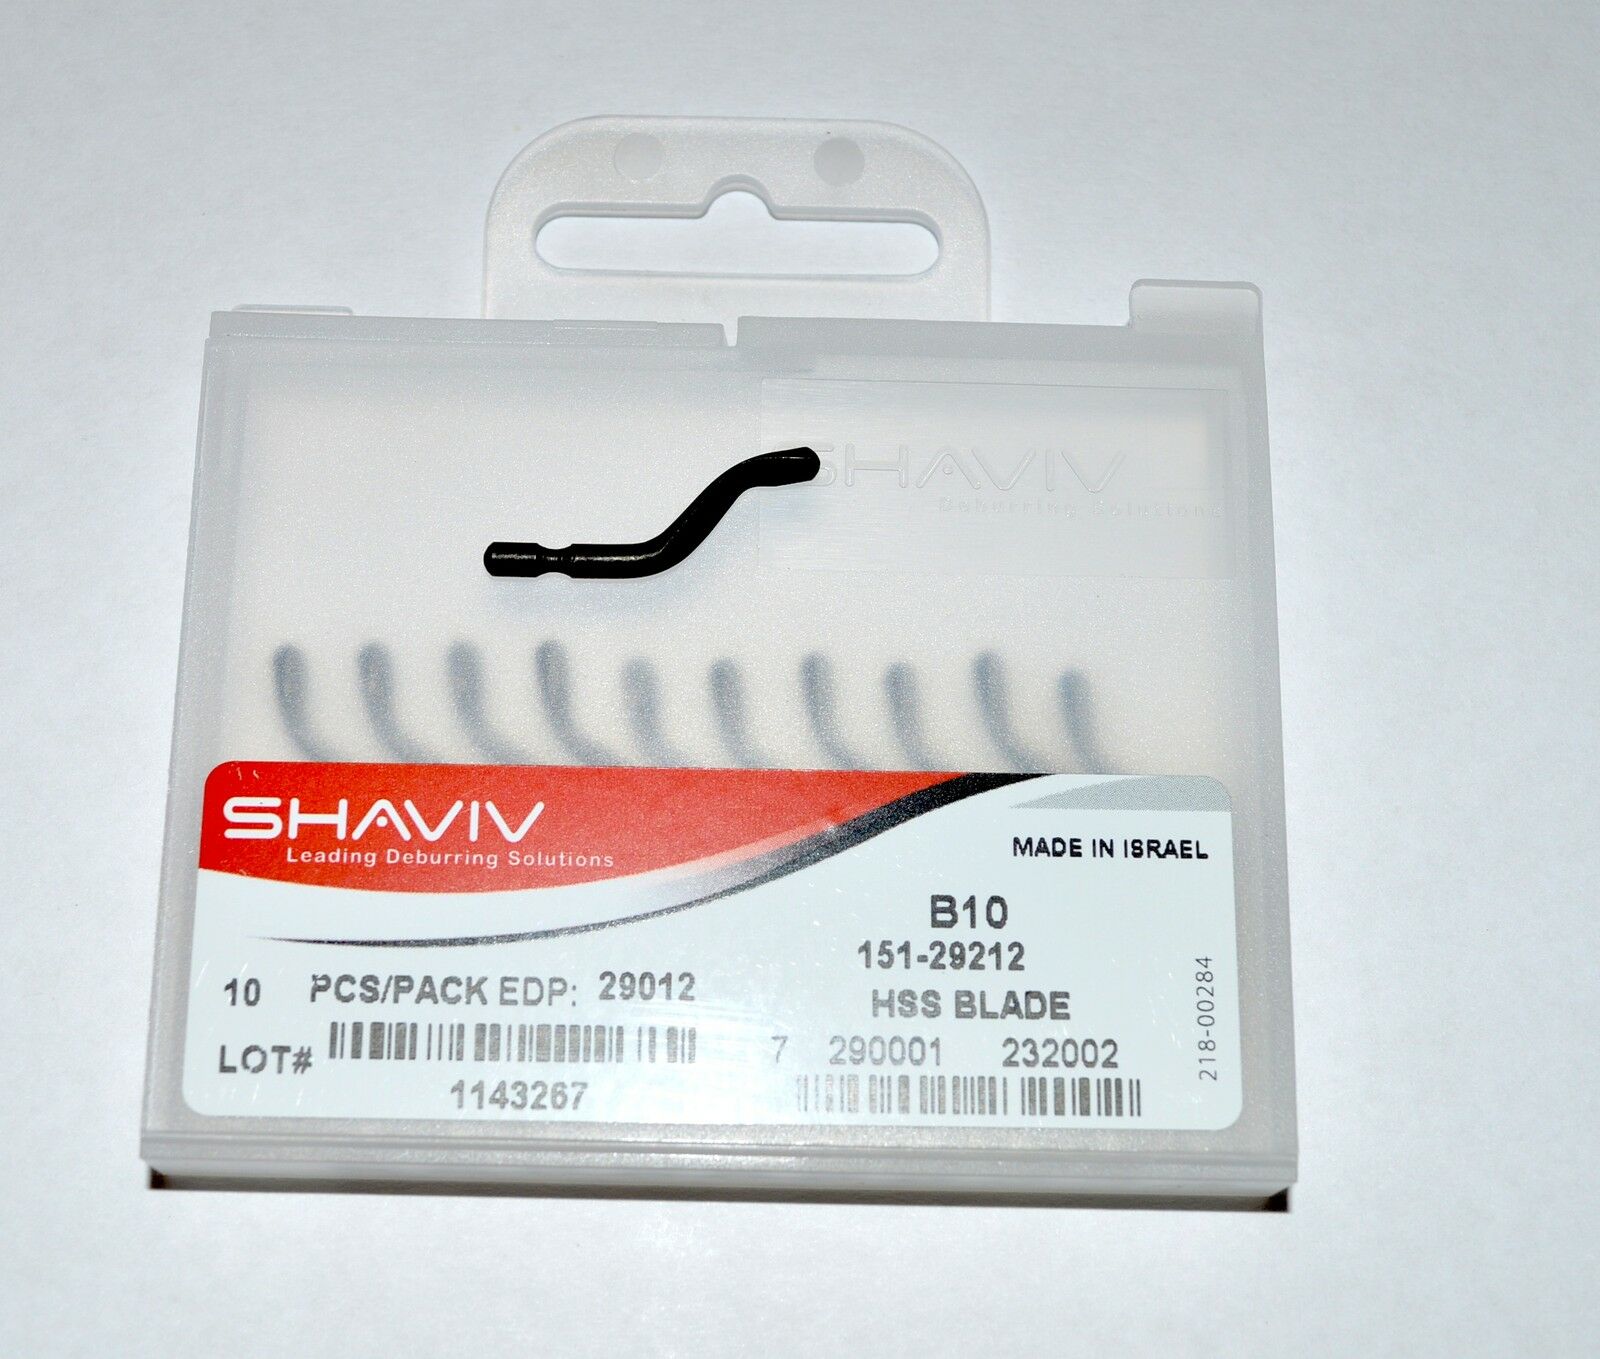 Shaviv B10 Cutter Deburring Blade Pkg of 10  #29012